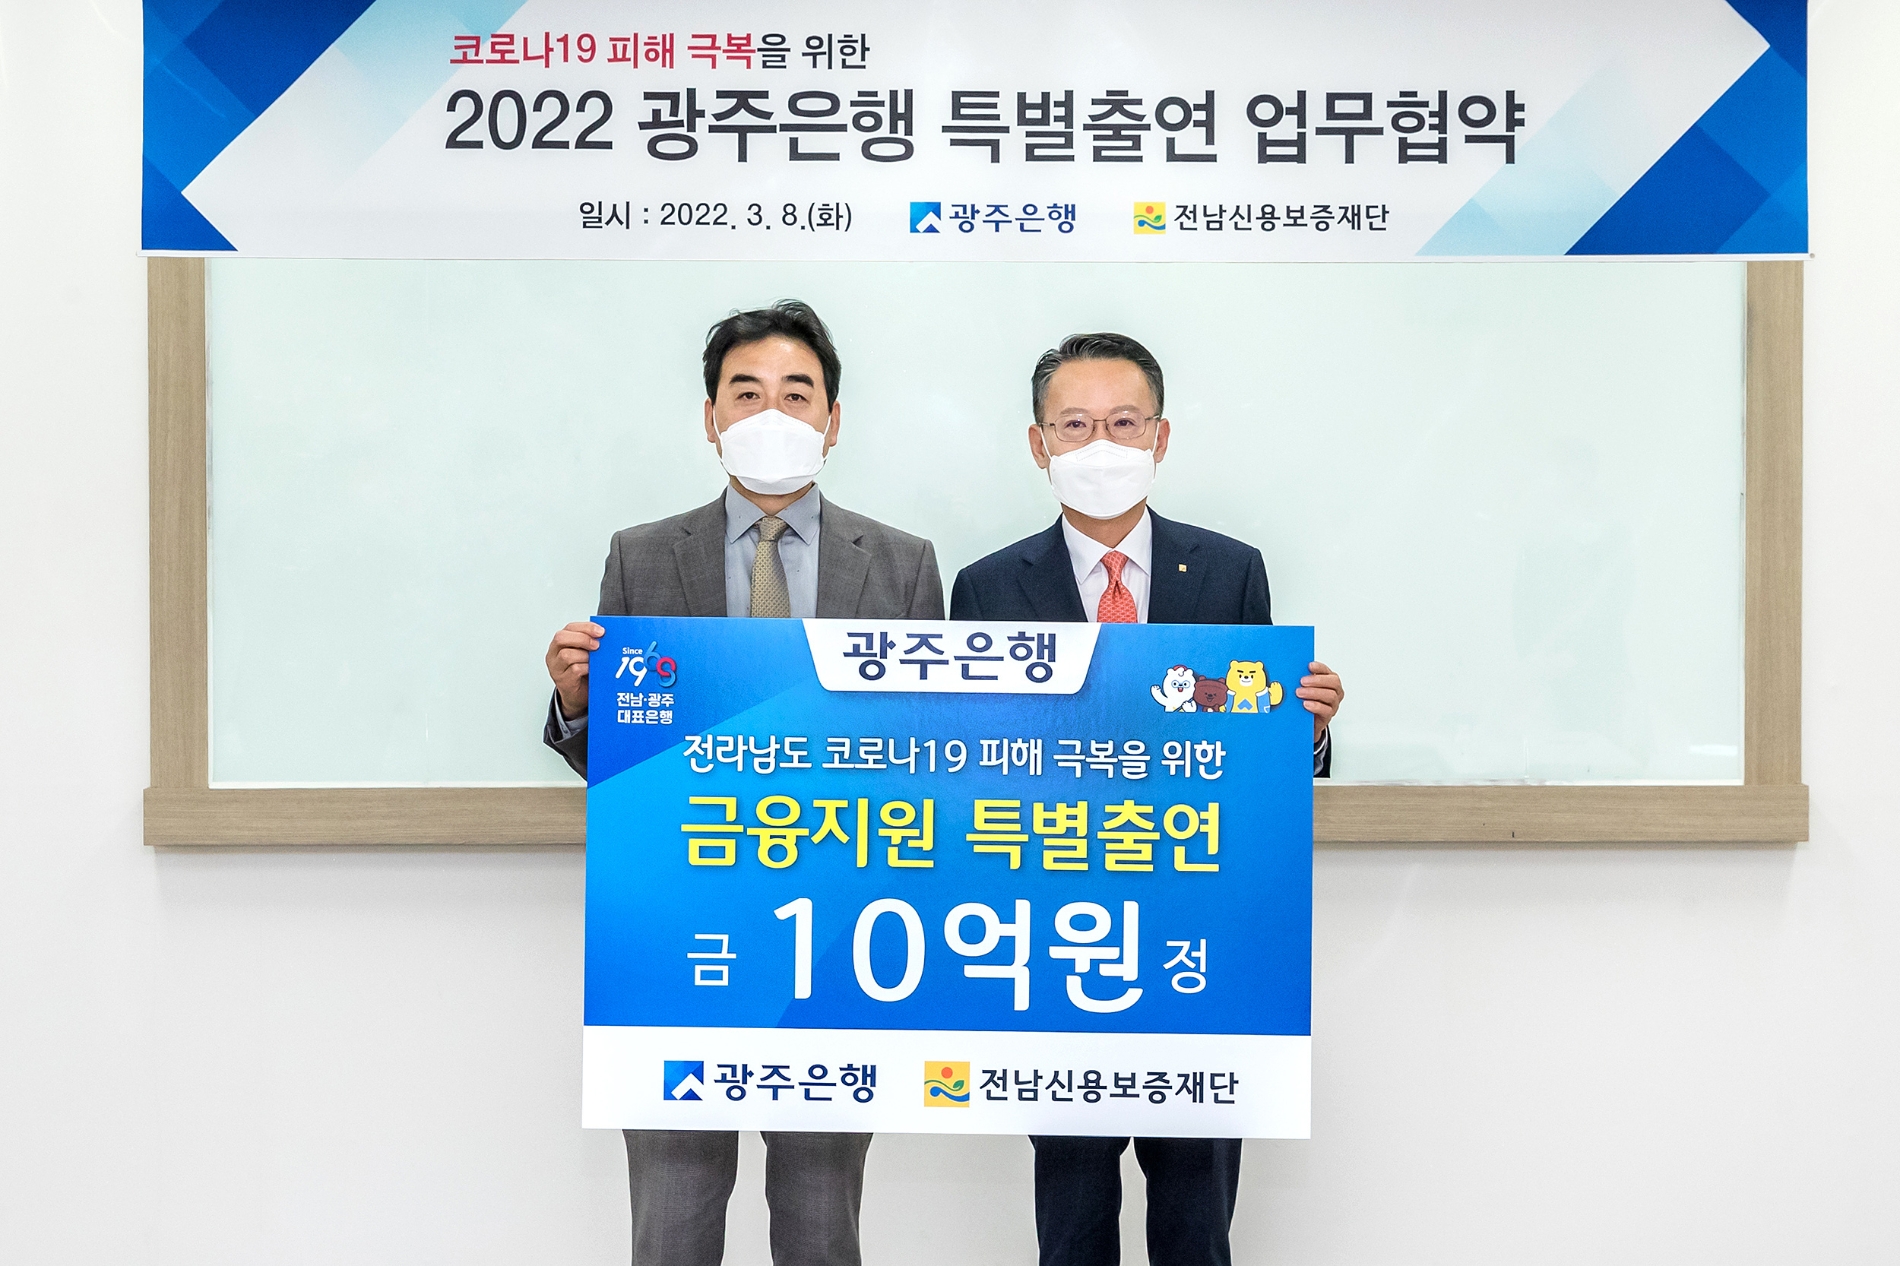 광주은행, 코로나19 피해업체 지원 위해 전남신용보증재단에 10억원 특별출연